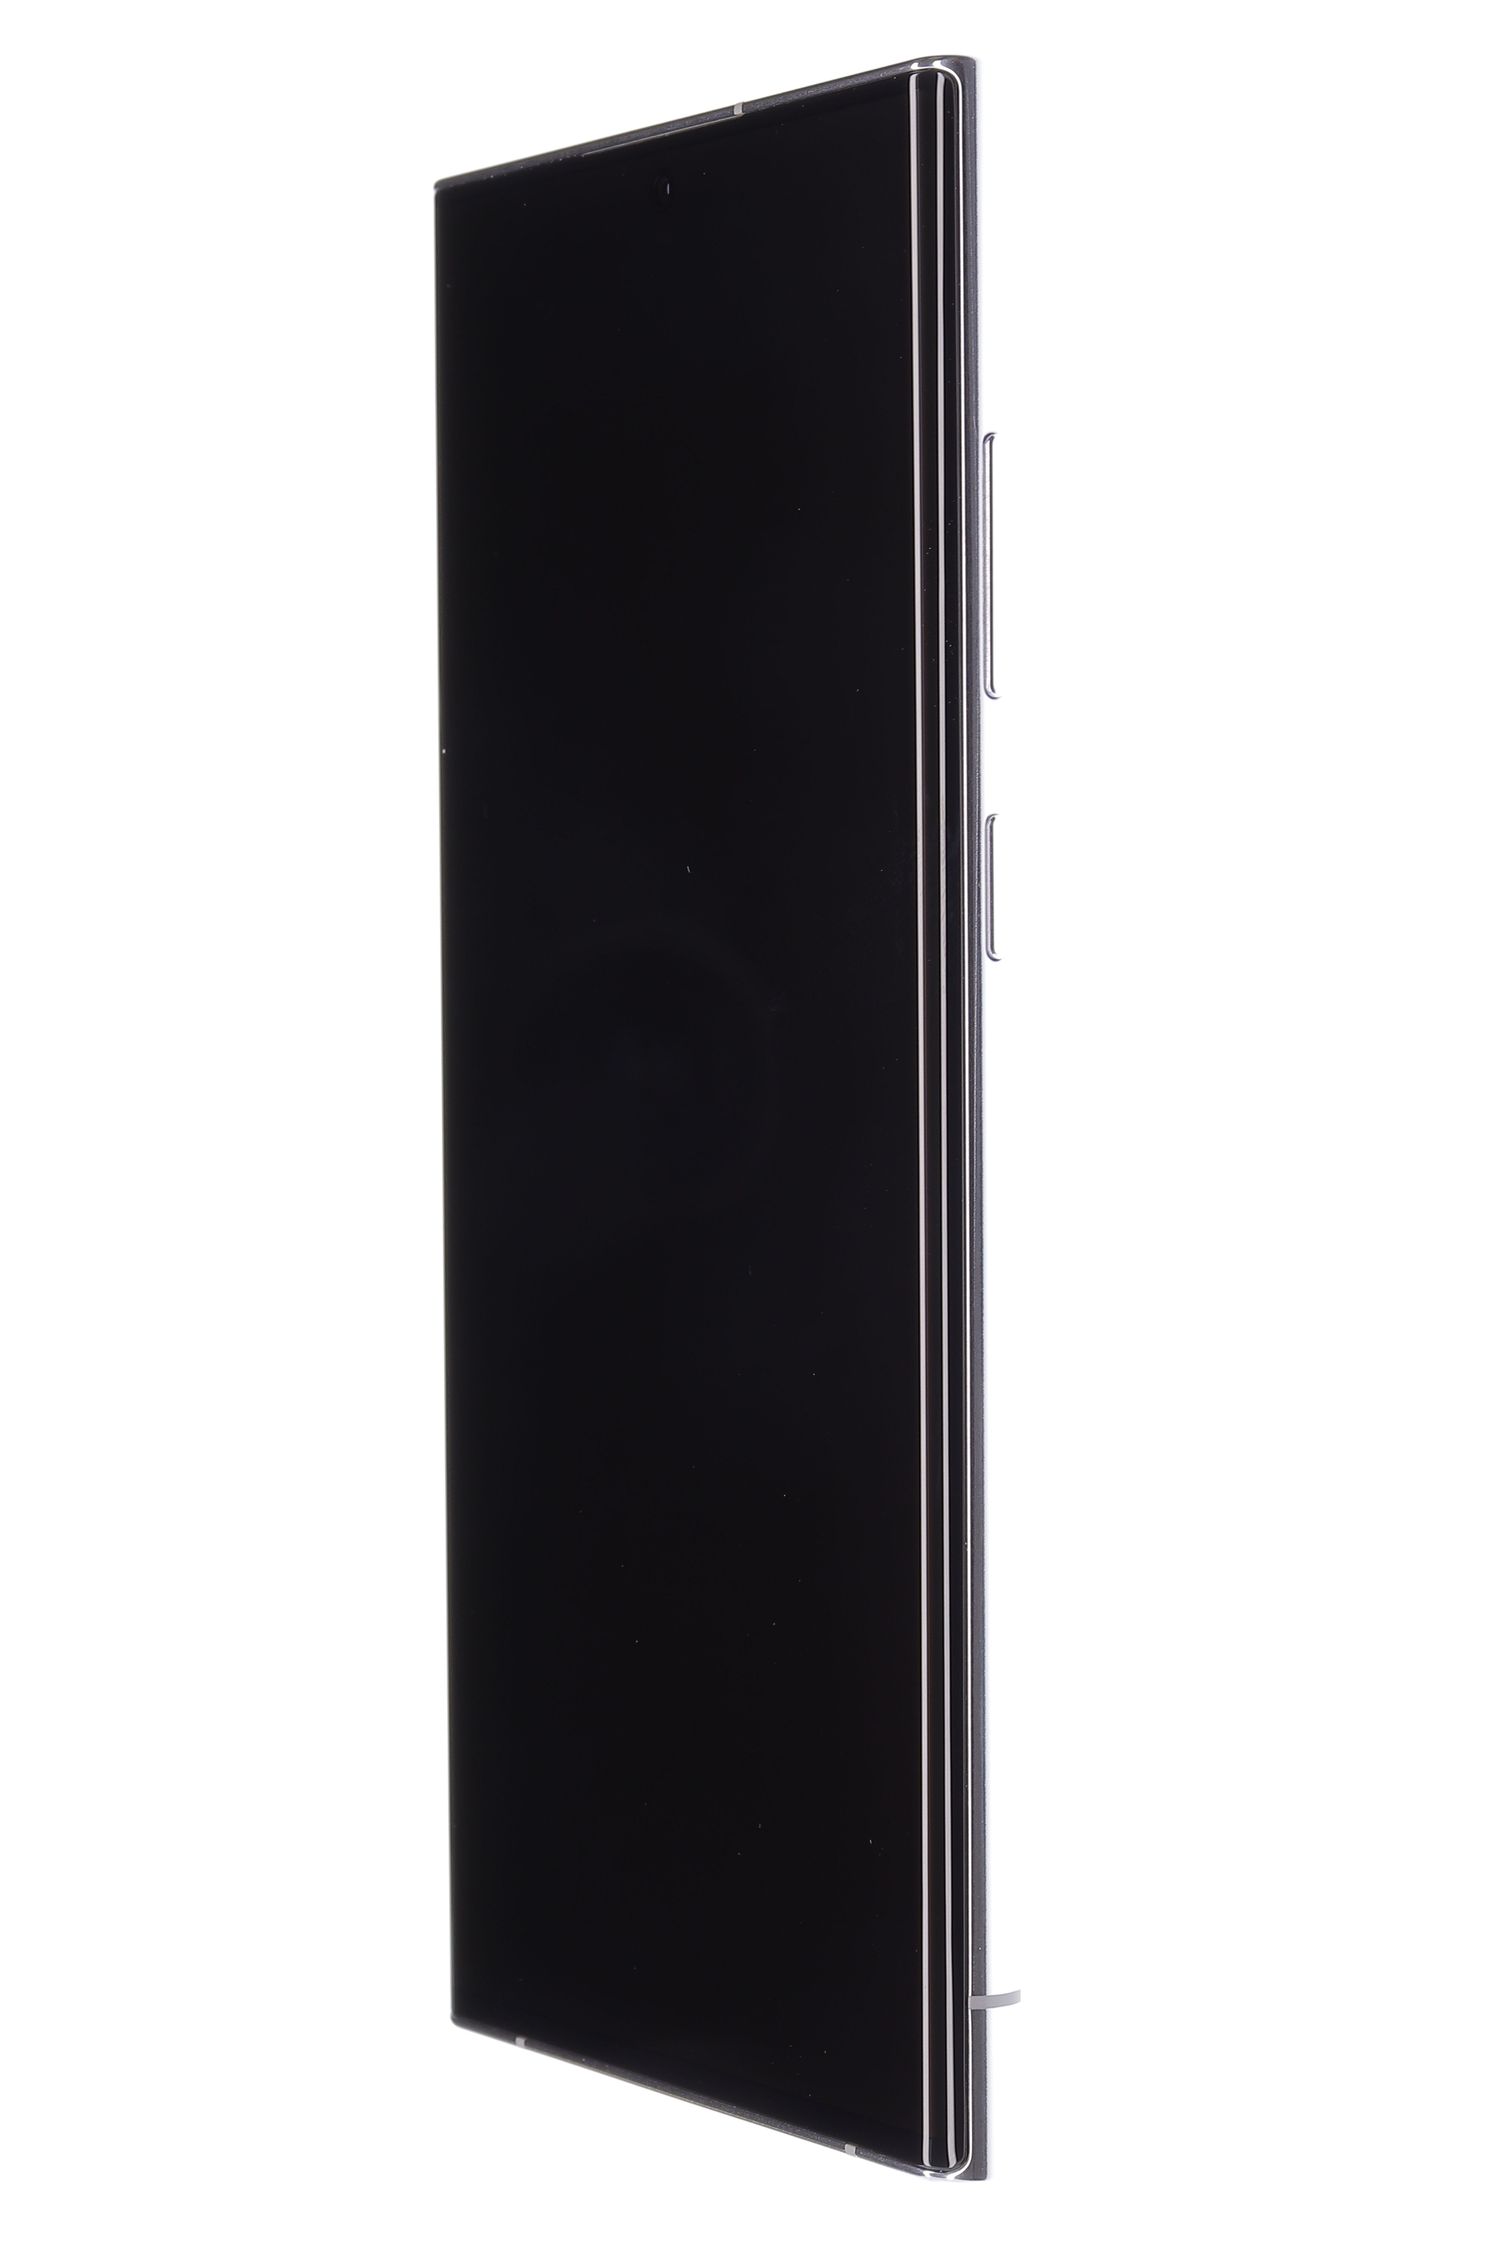 Κινητό τηλέφωνο Samsung Galaxy S22 Ultra 5G Dual Sim, Phantom White, 512 GB, Ca Nou